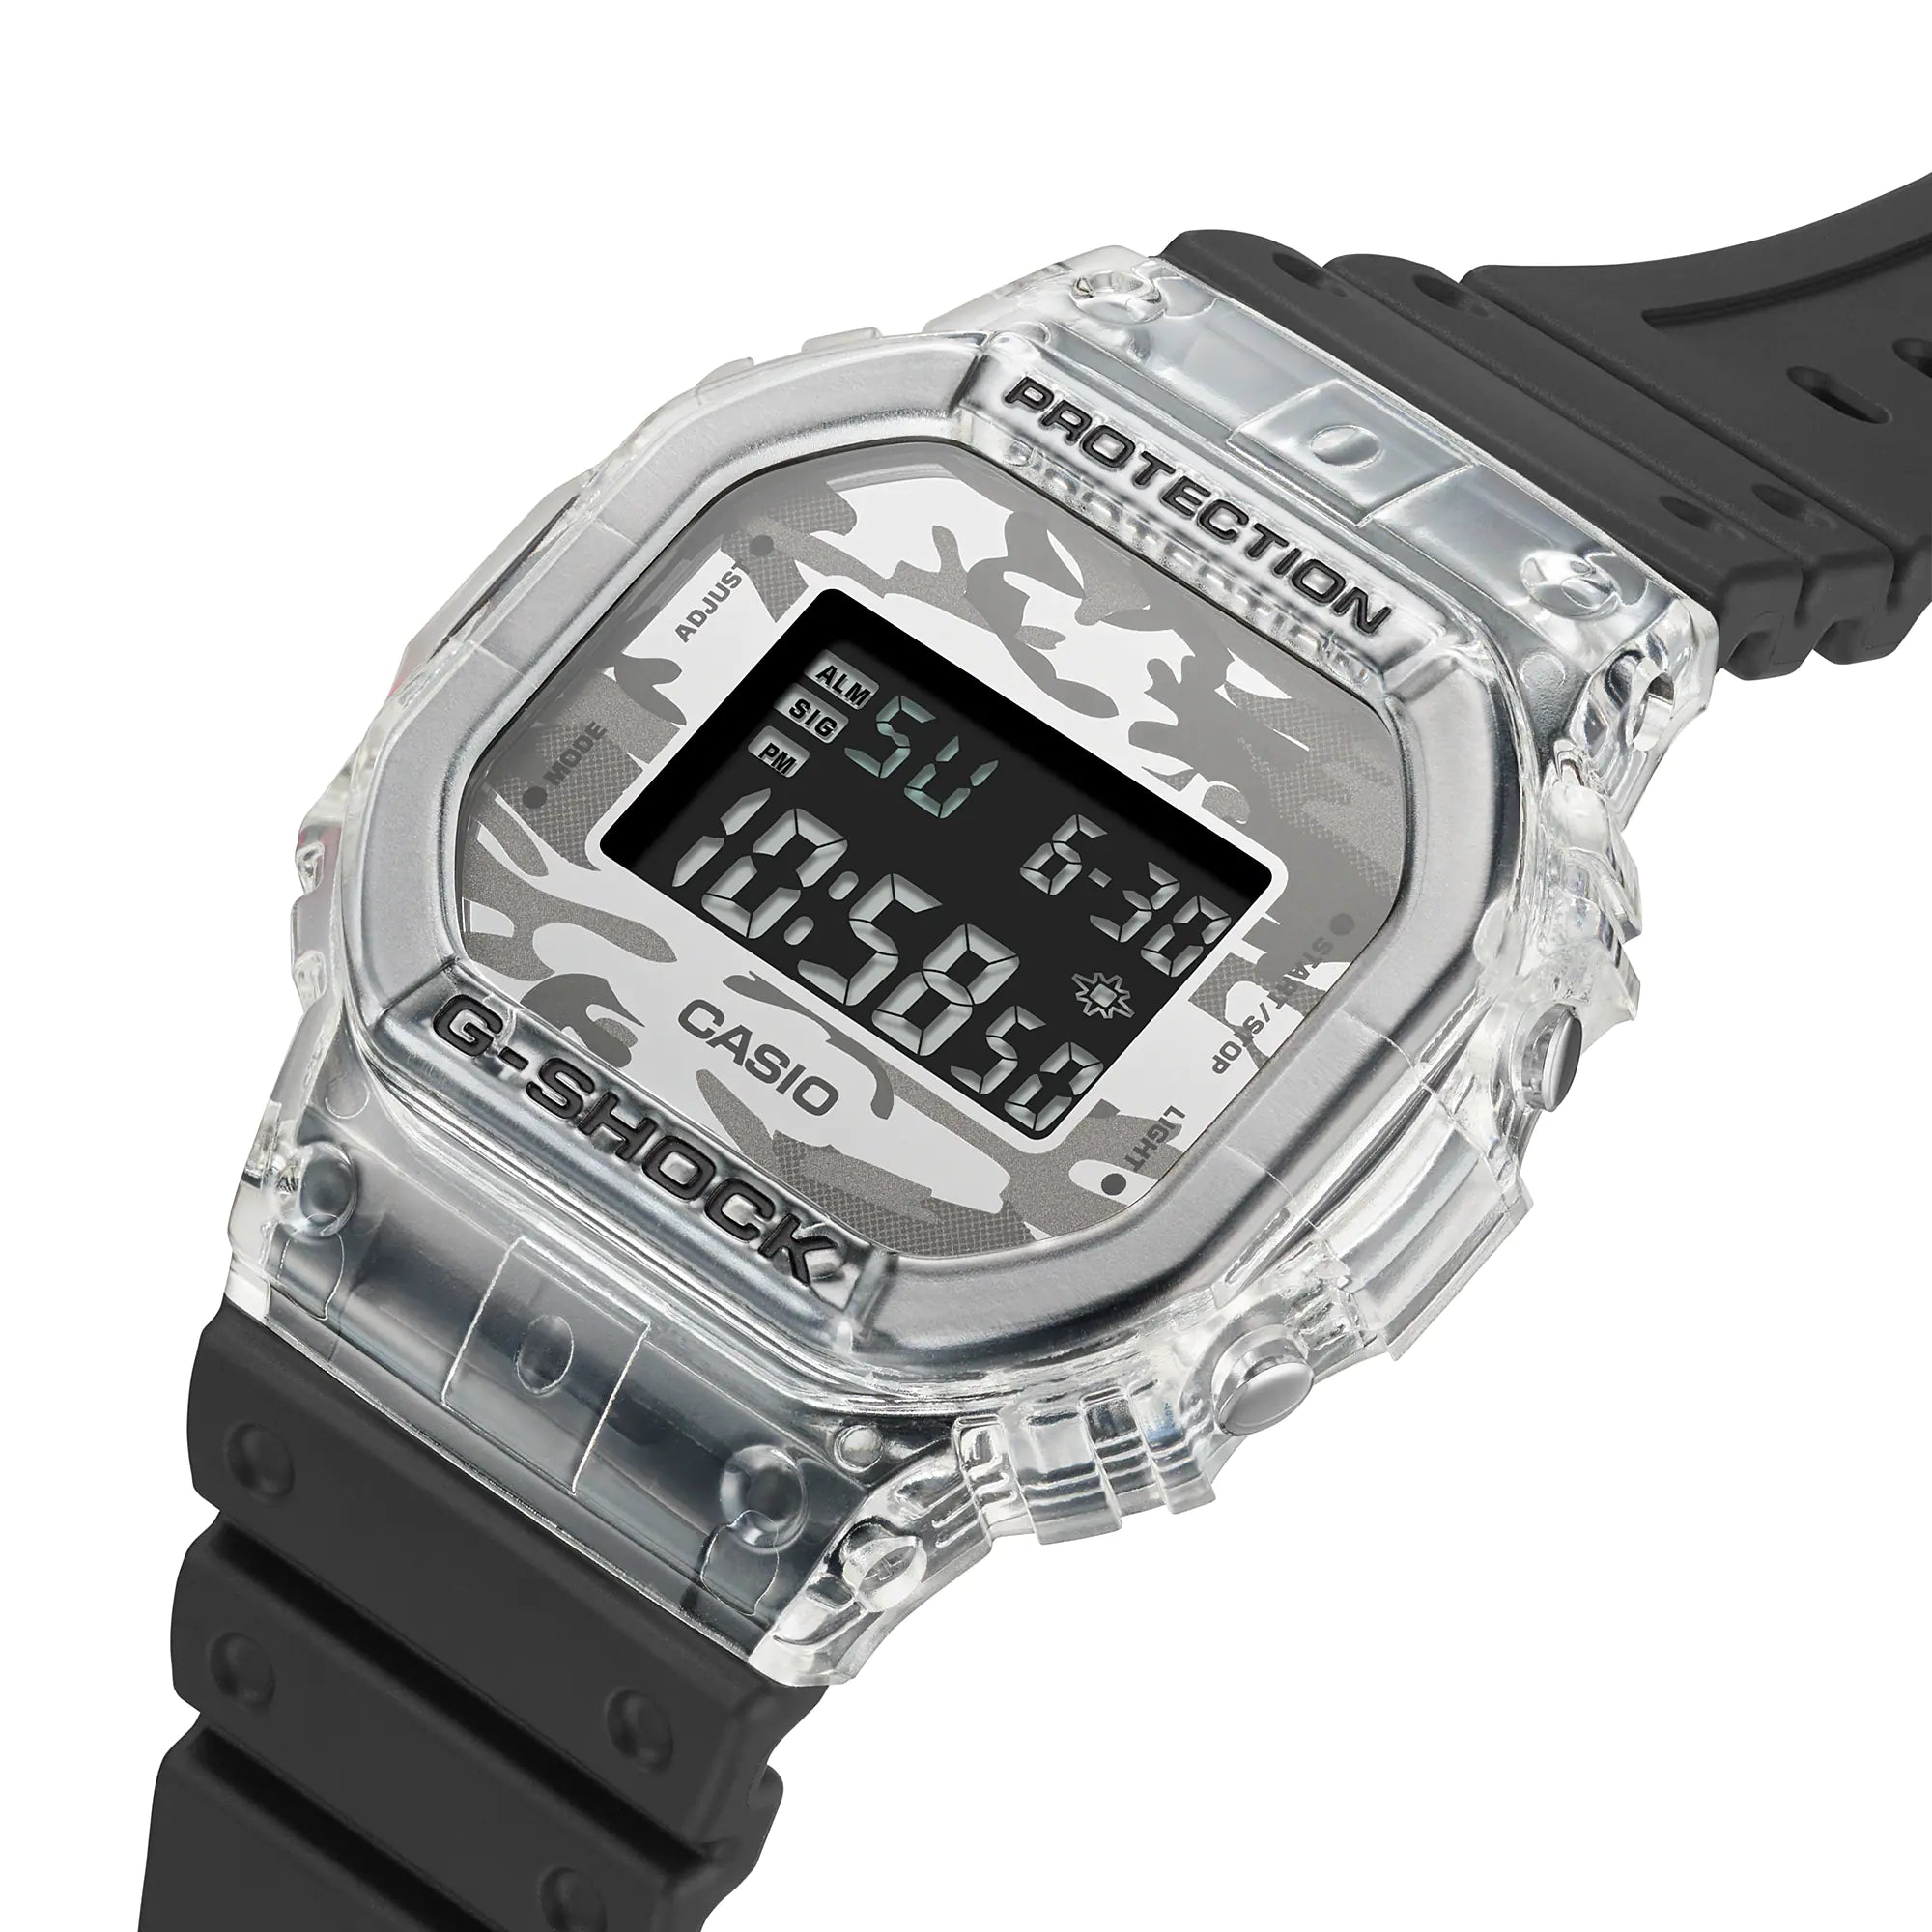 Casio Watch G-SHOCK 5600 SKC